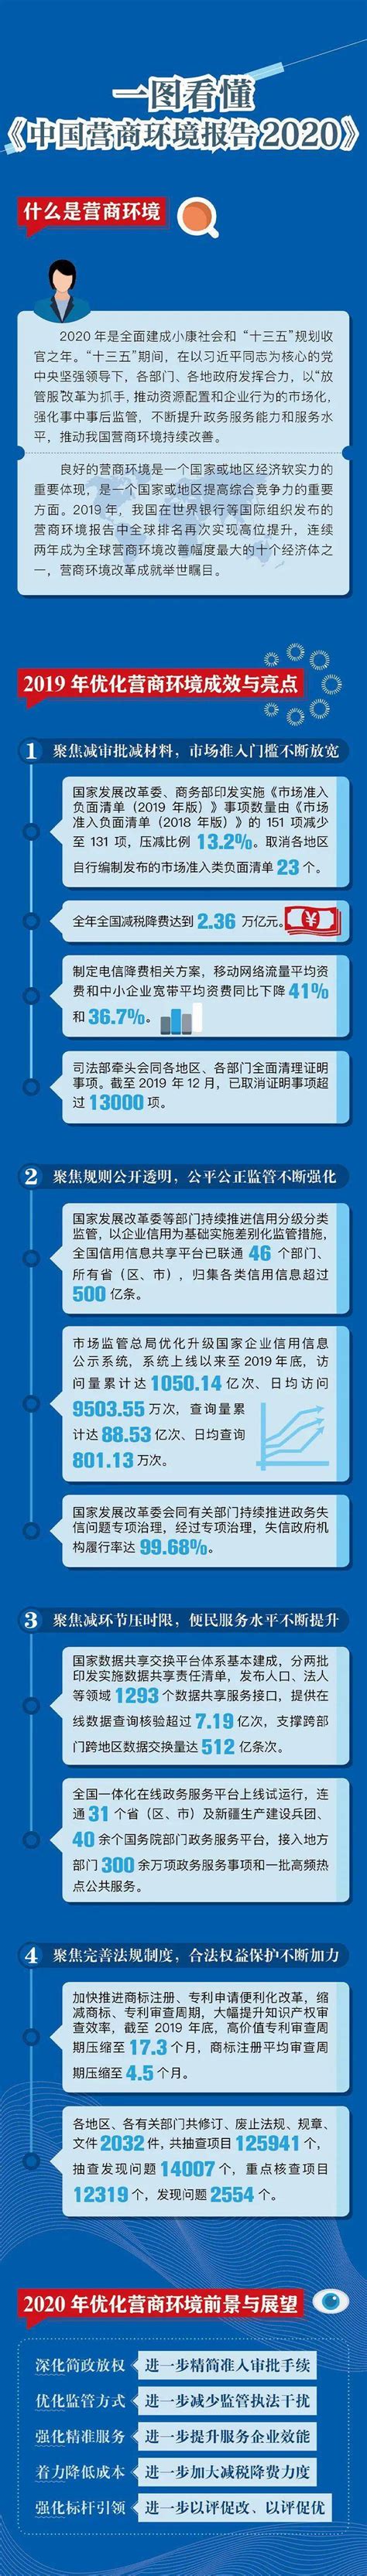 一图看懂《中国营商环境报告2020》